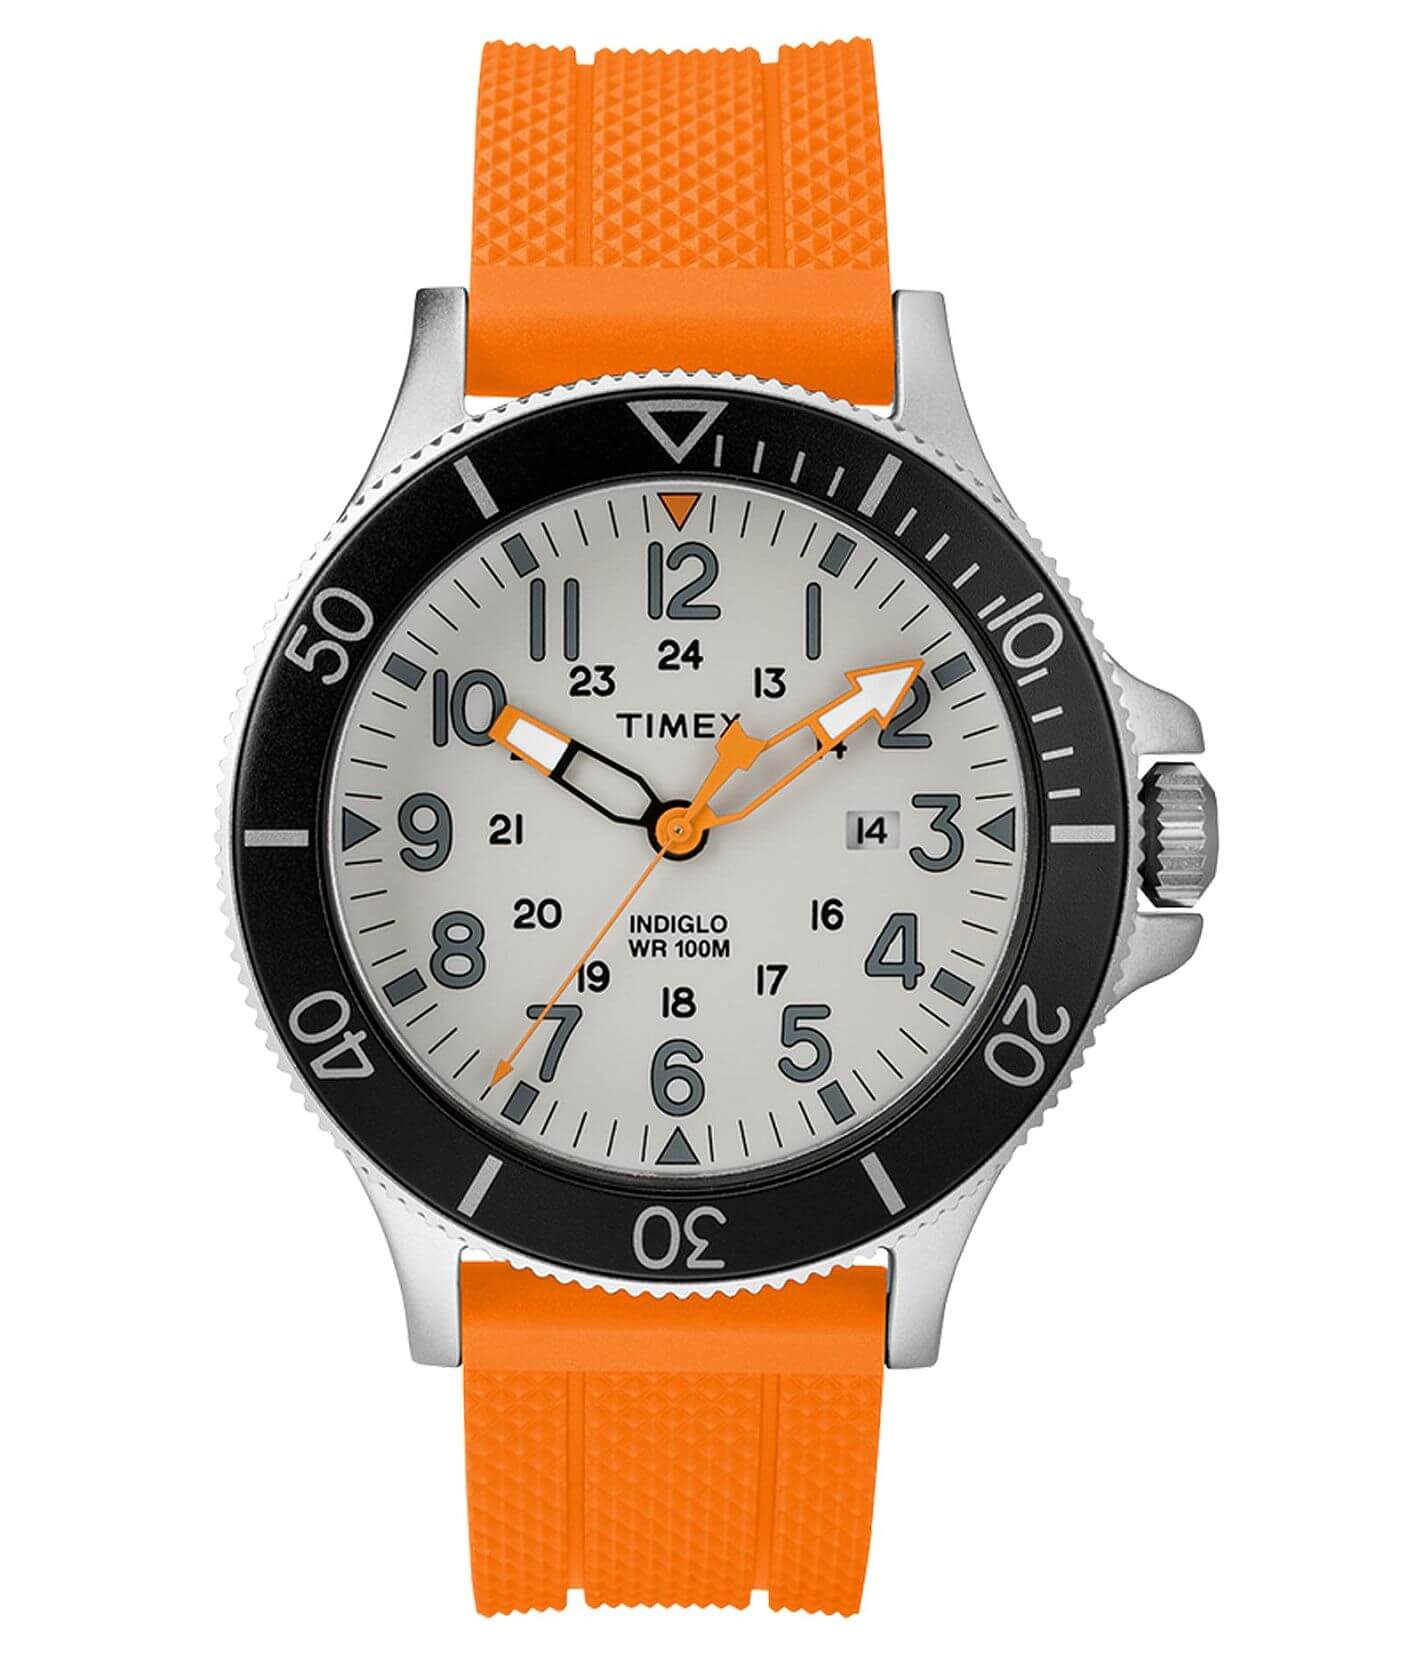 Timex Allied Coastline Watch - Men's Watches in Orange | Buckle